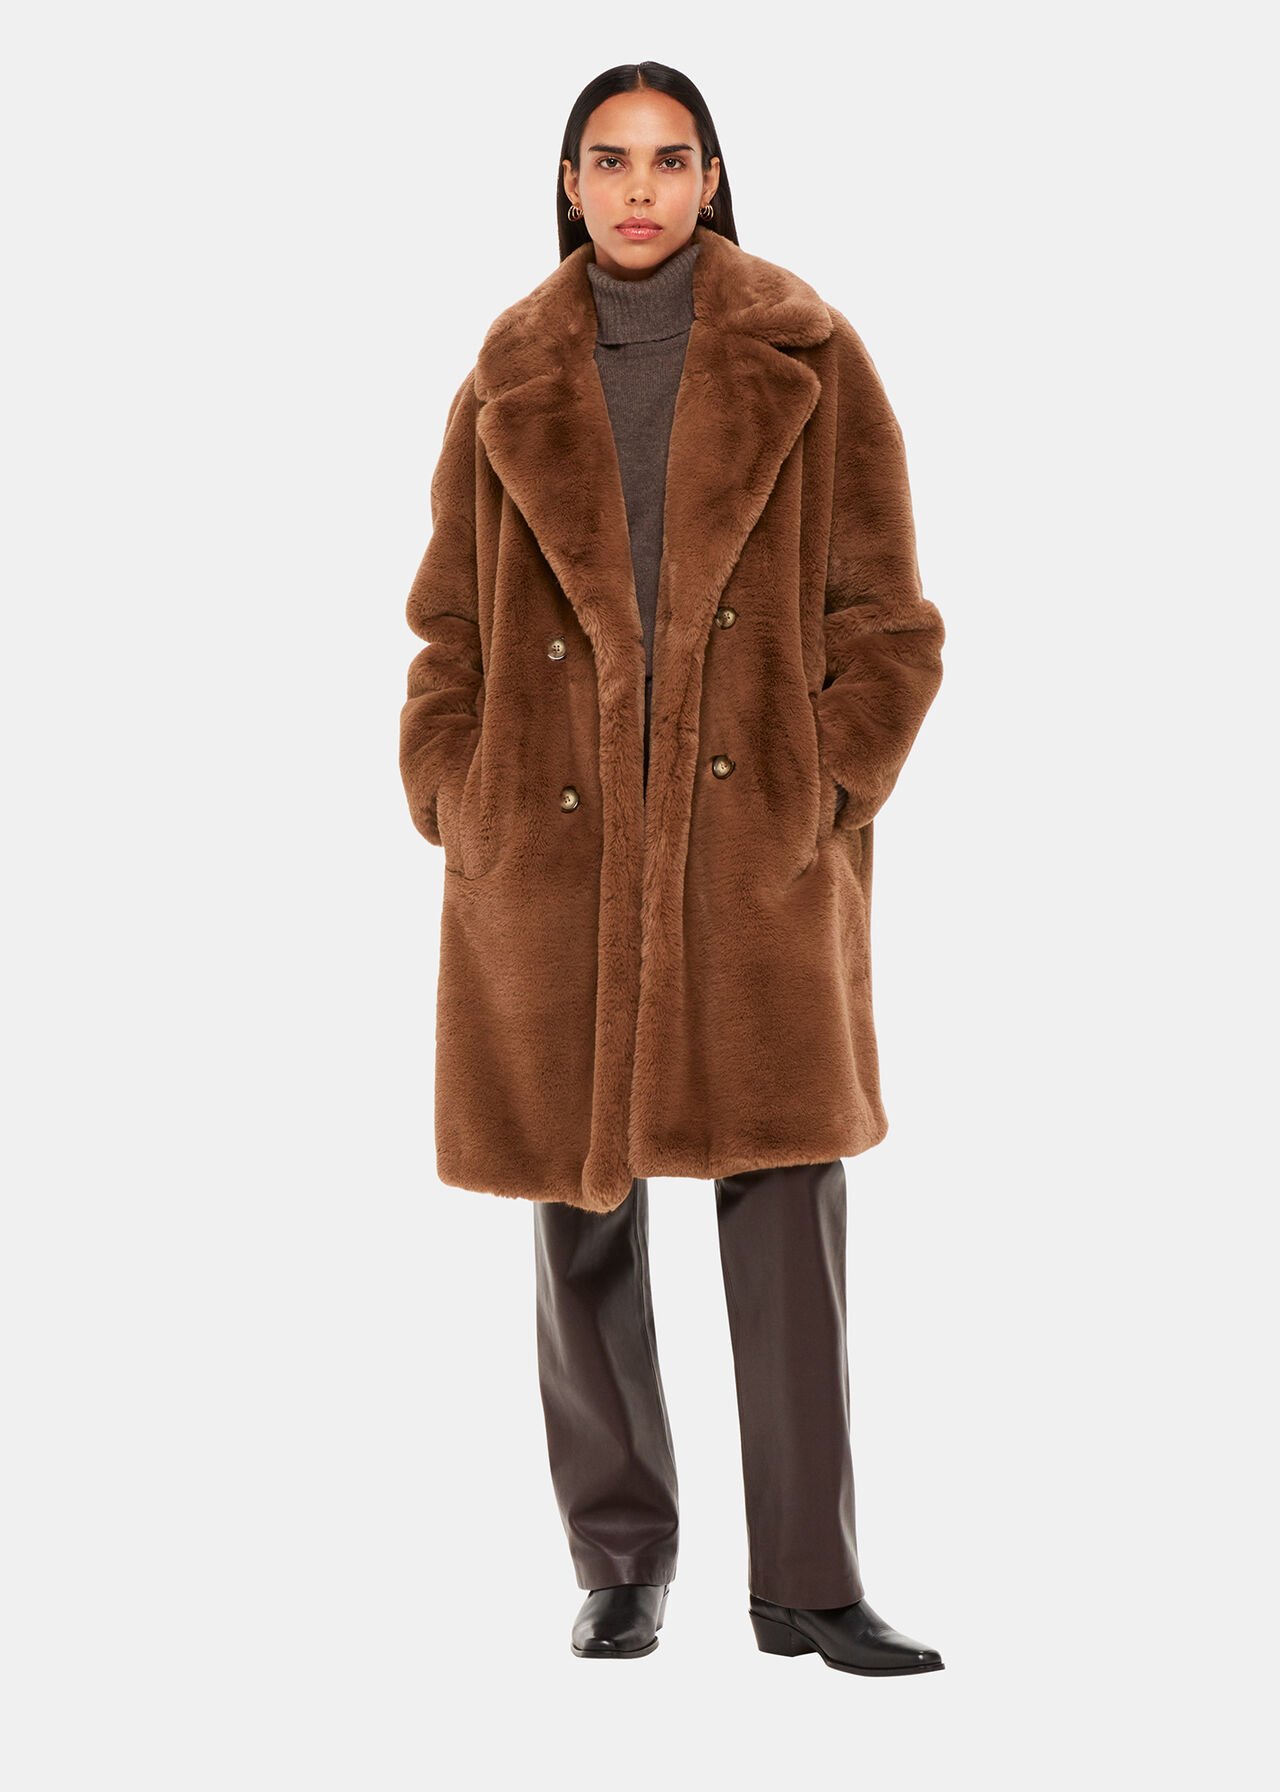 Teddy Faux Fur Coat